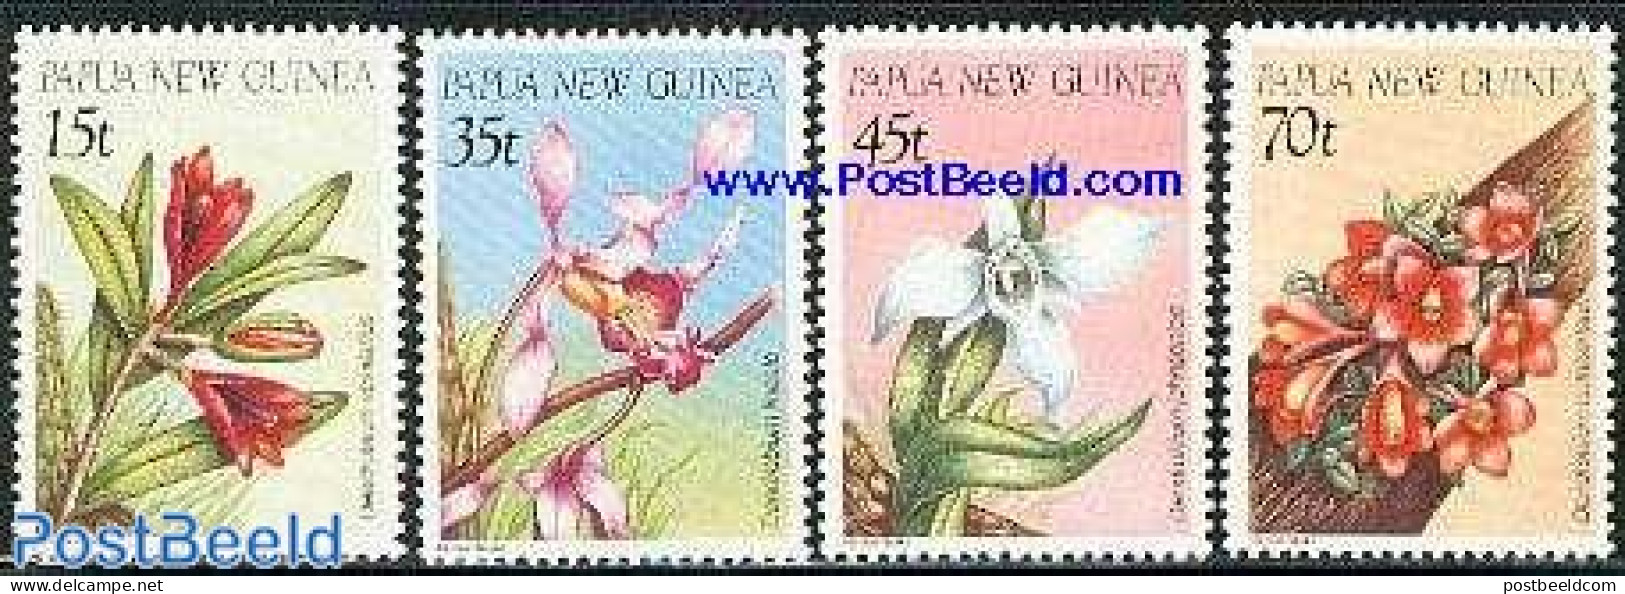 Papua New Guinea 1986 Orchids 4v, Mint NH, Nature - Flowers & Plants - Orchids - Papouasie-Nouvelle-Guinée